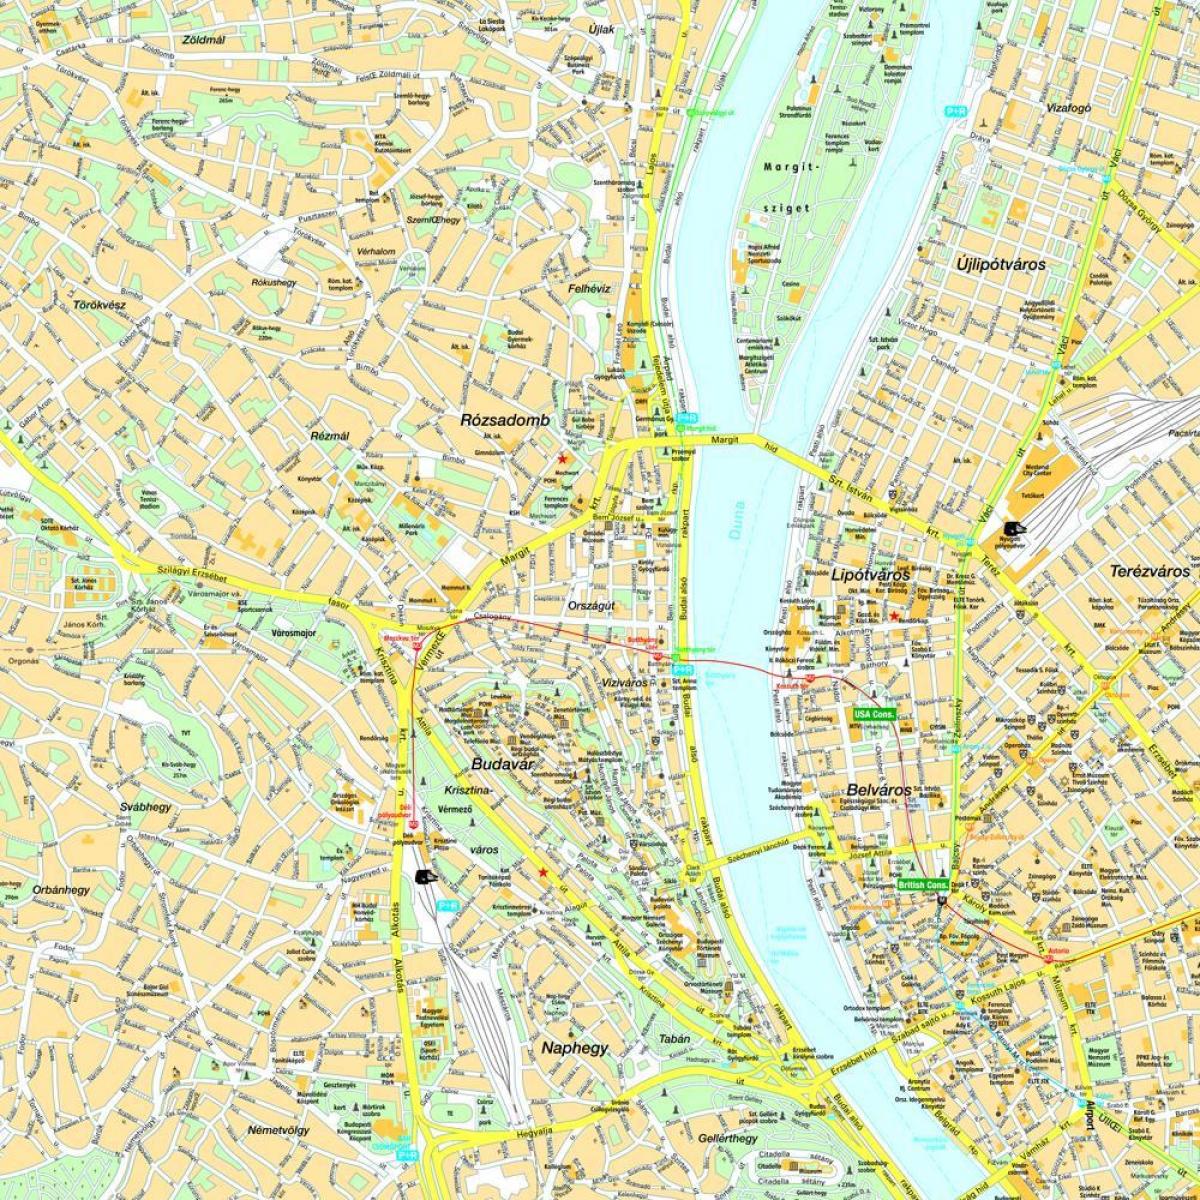 zemljevid budimpešti in okolici